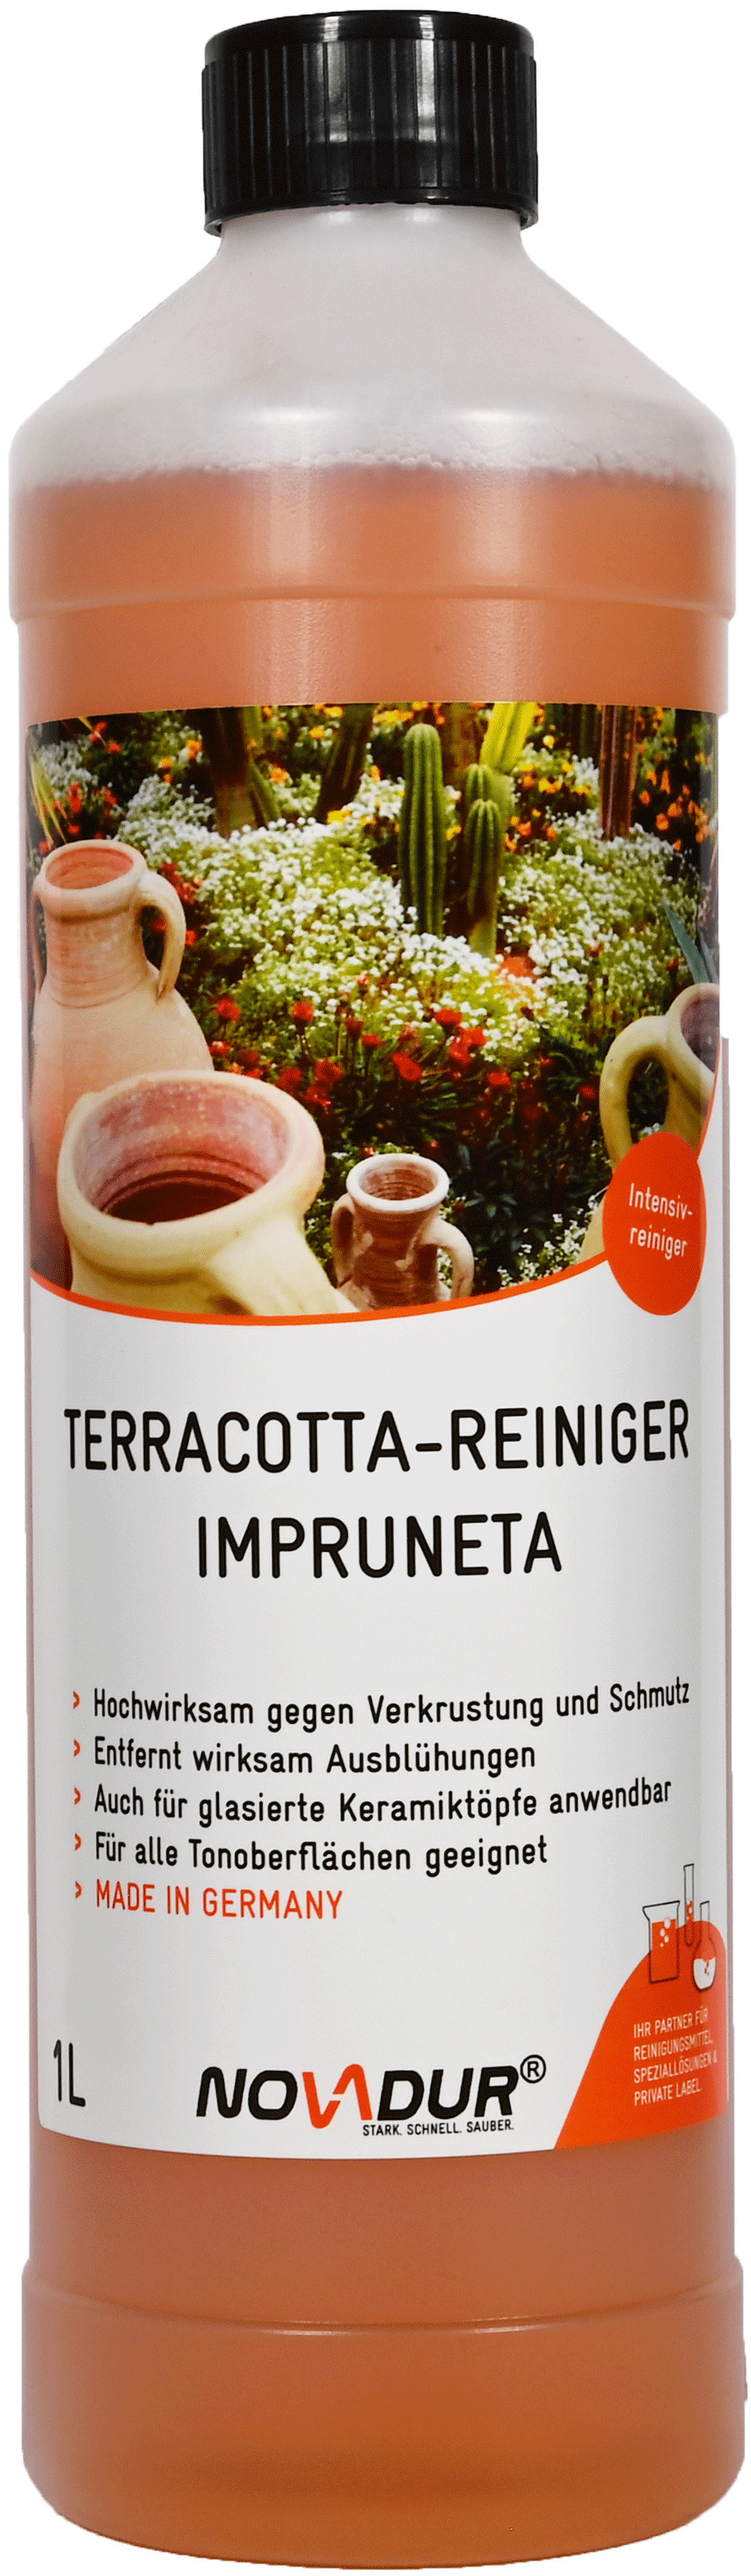 Terracotta-Reiniger Impruneta